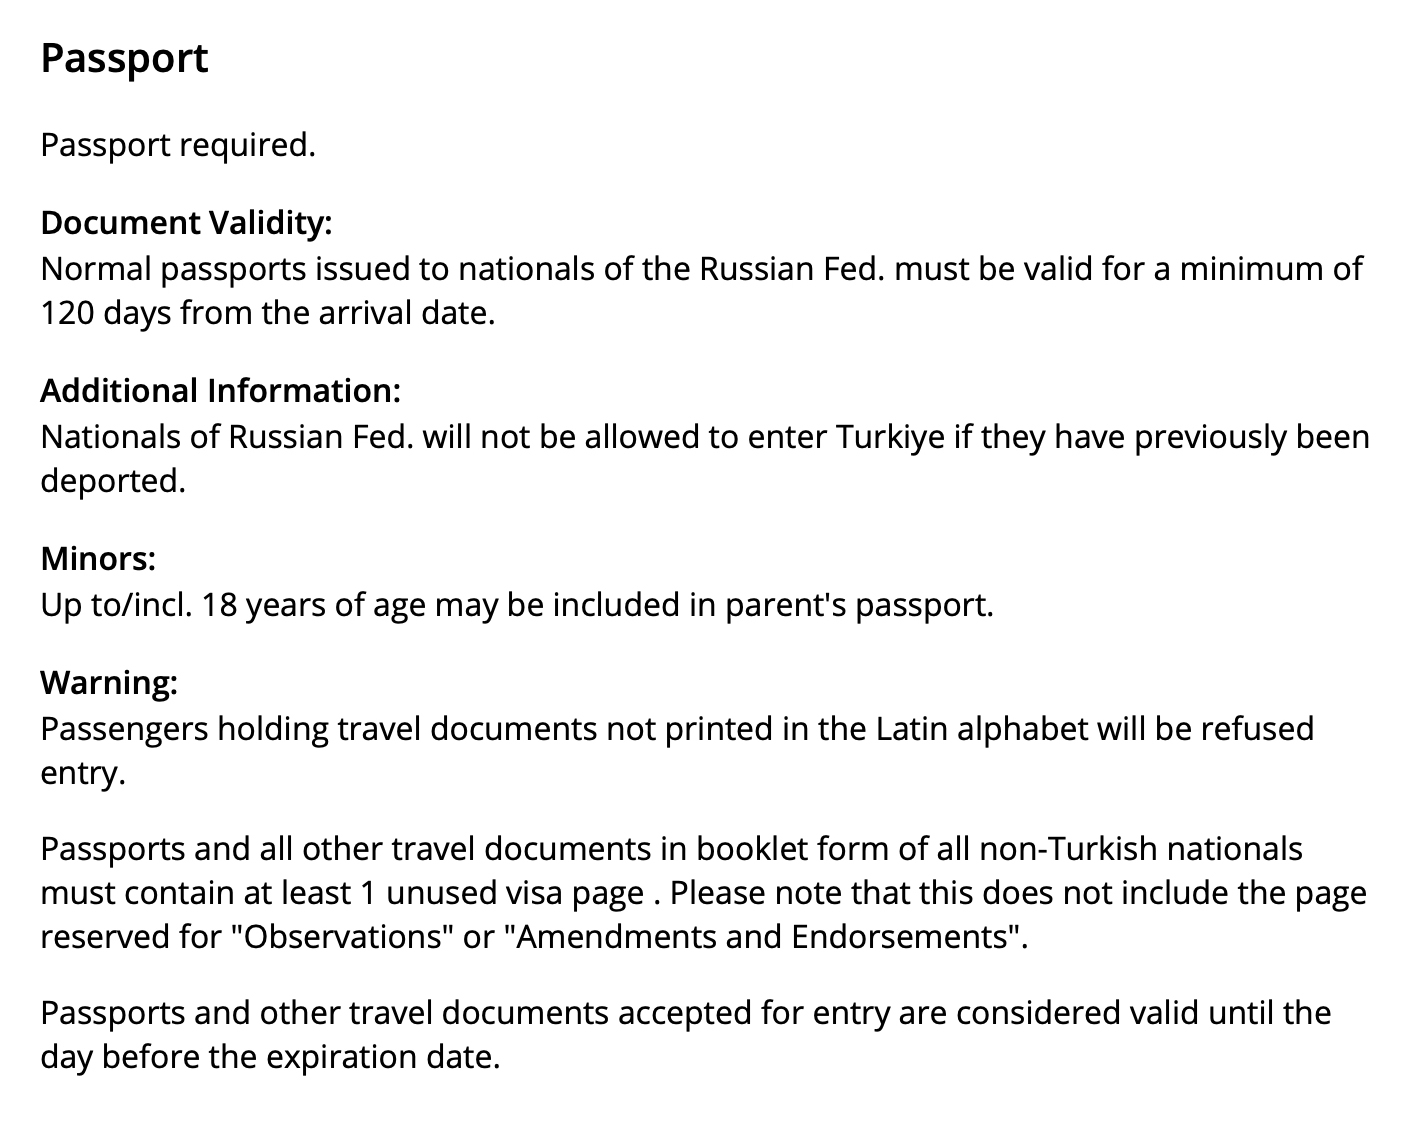 В базе данных United указано, что срок действия паспорта для поездки в Турцию должен быть минимум 120 дней. Источник: united.com